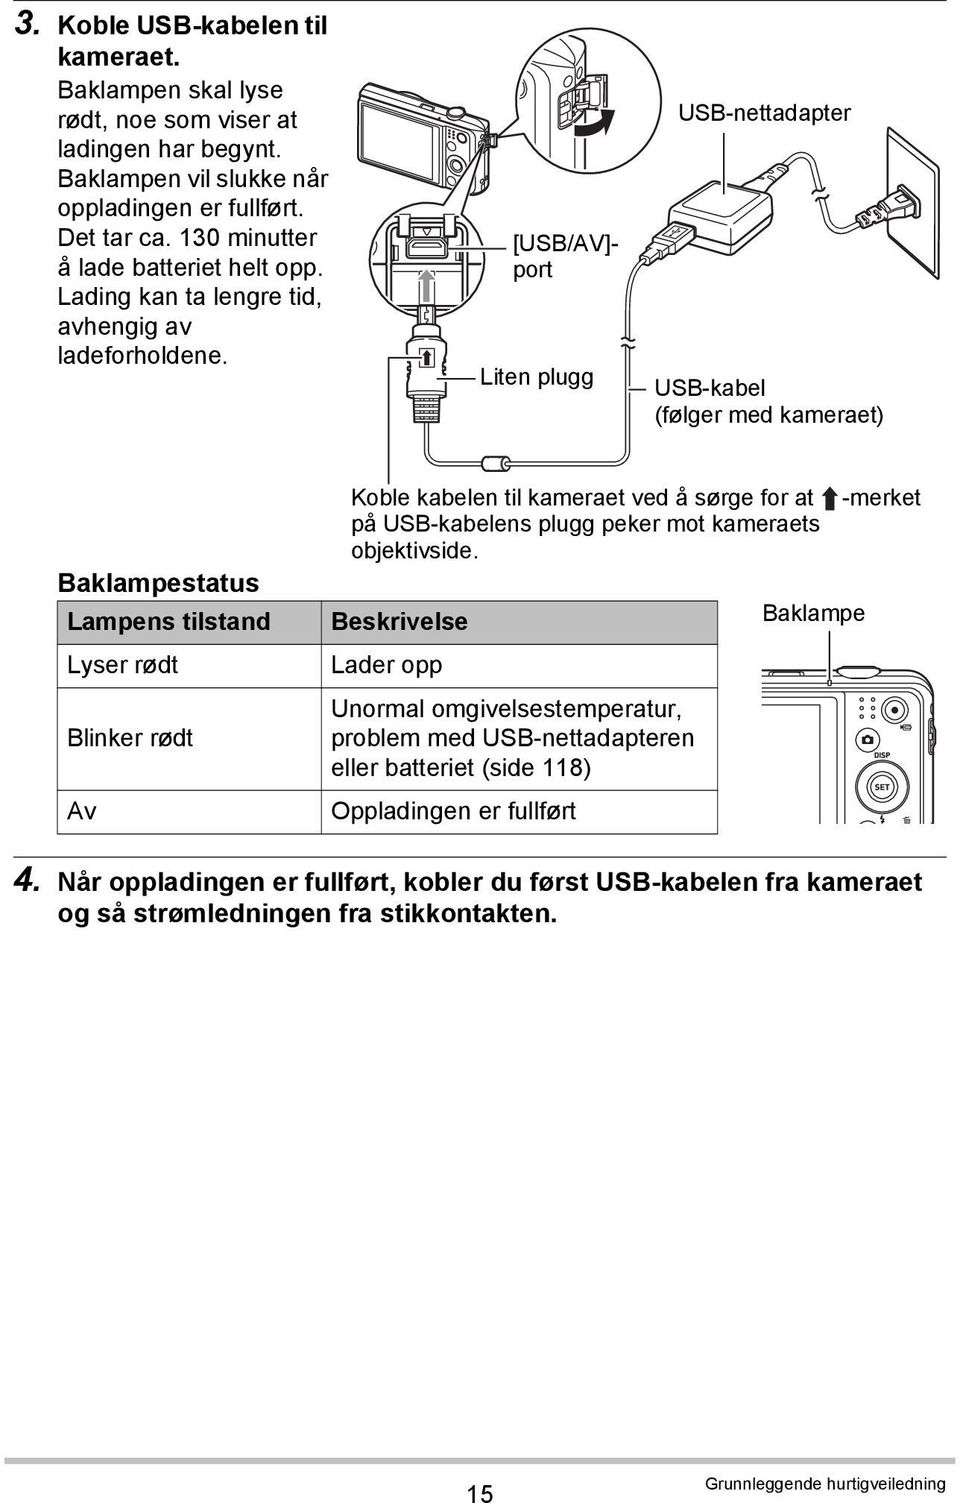 [USB/AV]- port Liten plugg USB-nettadapter USB-kabel (følger med kameraet) Baklampestatus Lampens tilstand Lyser rødt Blinker rødt Av Koble kabelen til kameraet ved å sørge for at på USB-kabelens